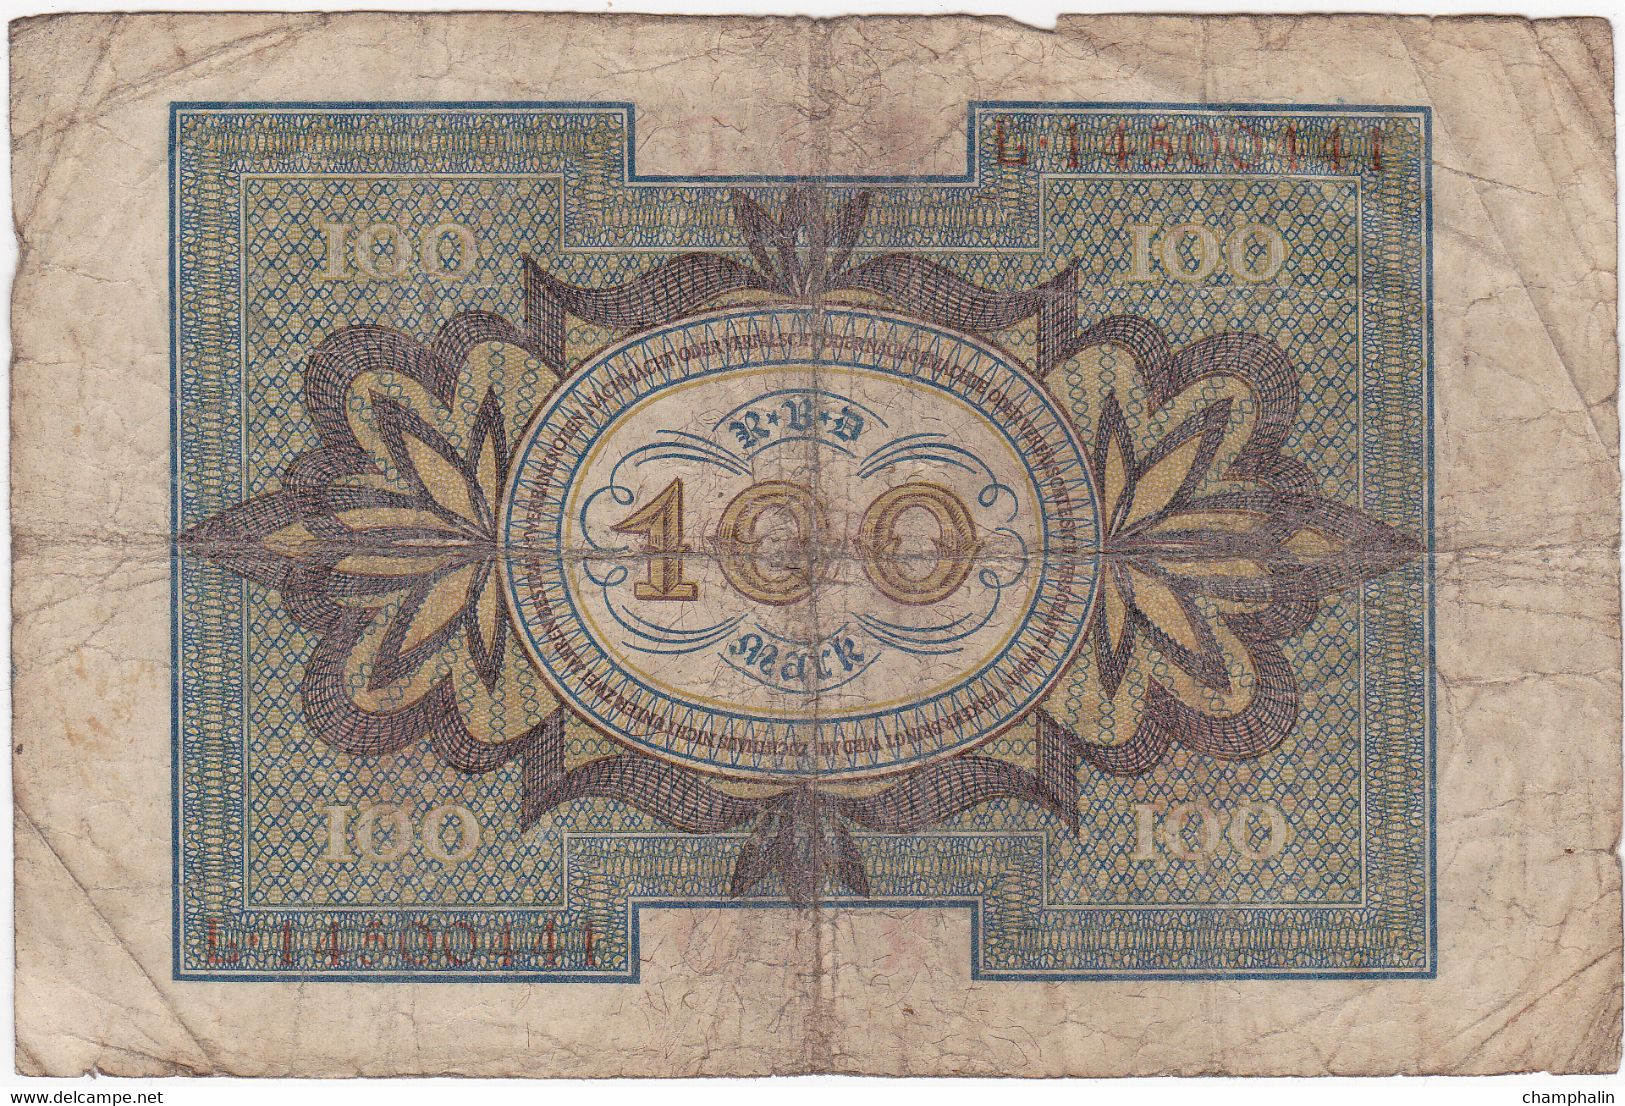 Allemagne - Billet De 100 Mark - 1er Novembre 1920 - P69b - 10 Mark